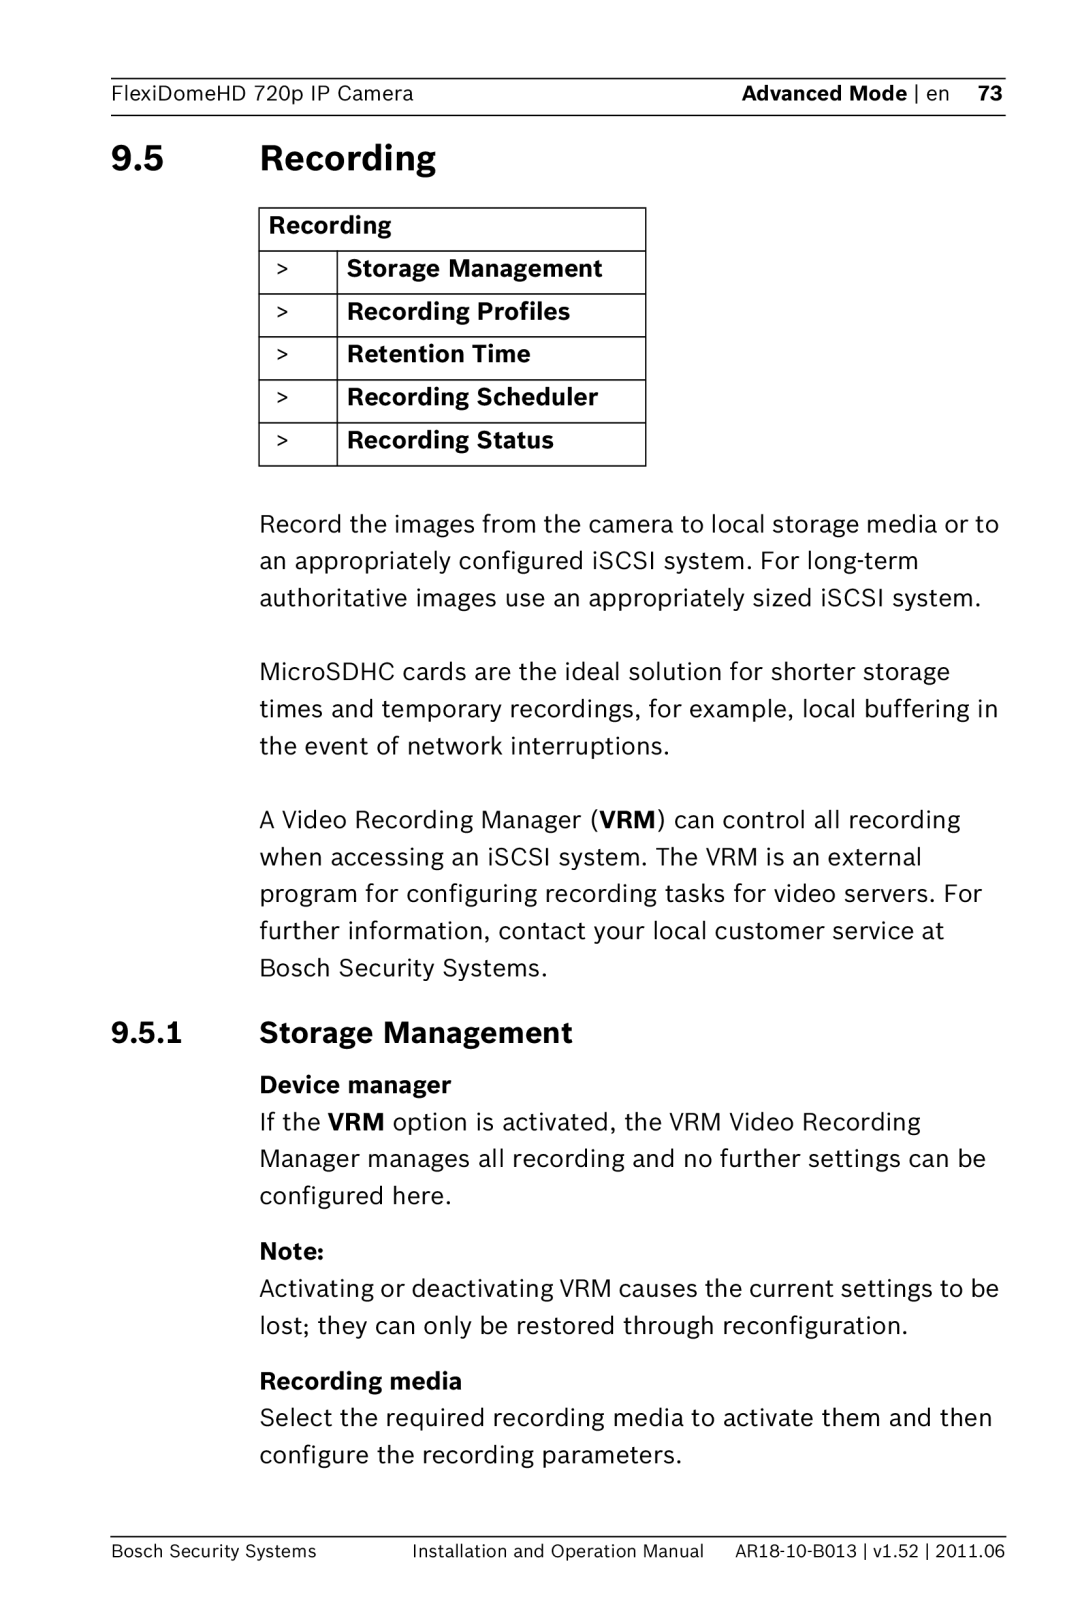 Bosch Appliances NDN-921 9.5Recording, 9.5.1Storage Management, Recording >Storage Management >Recording Profiles 